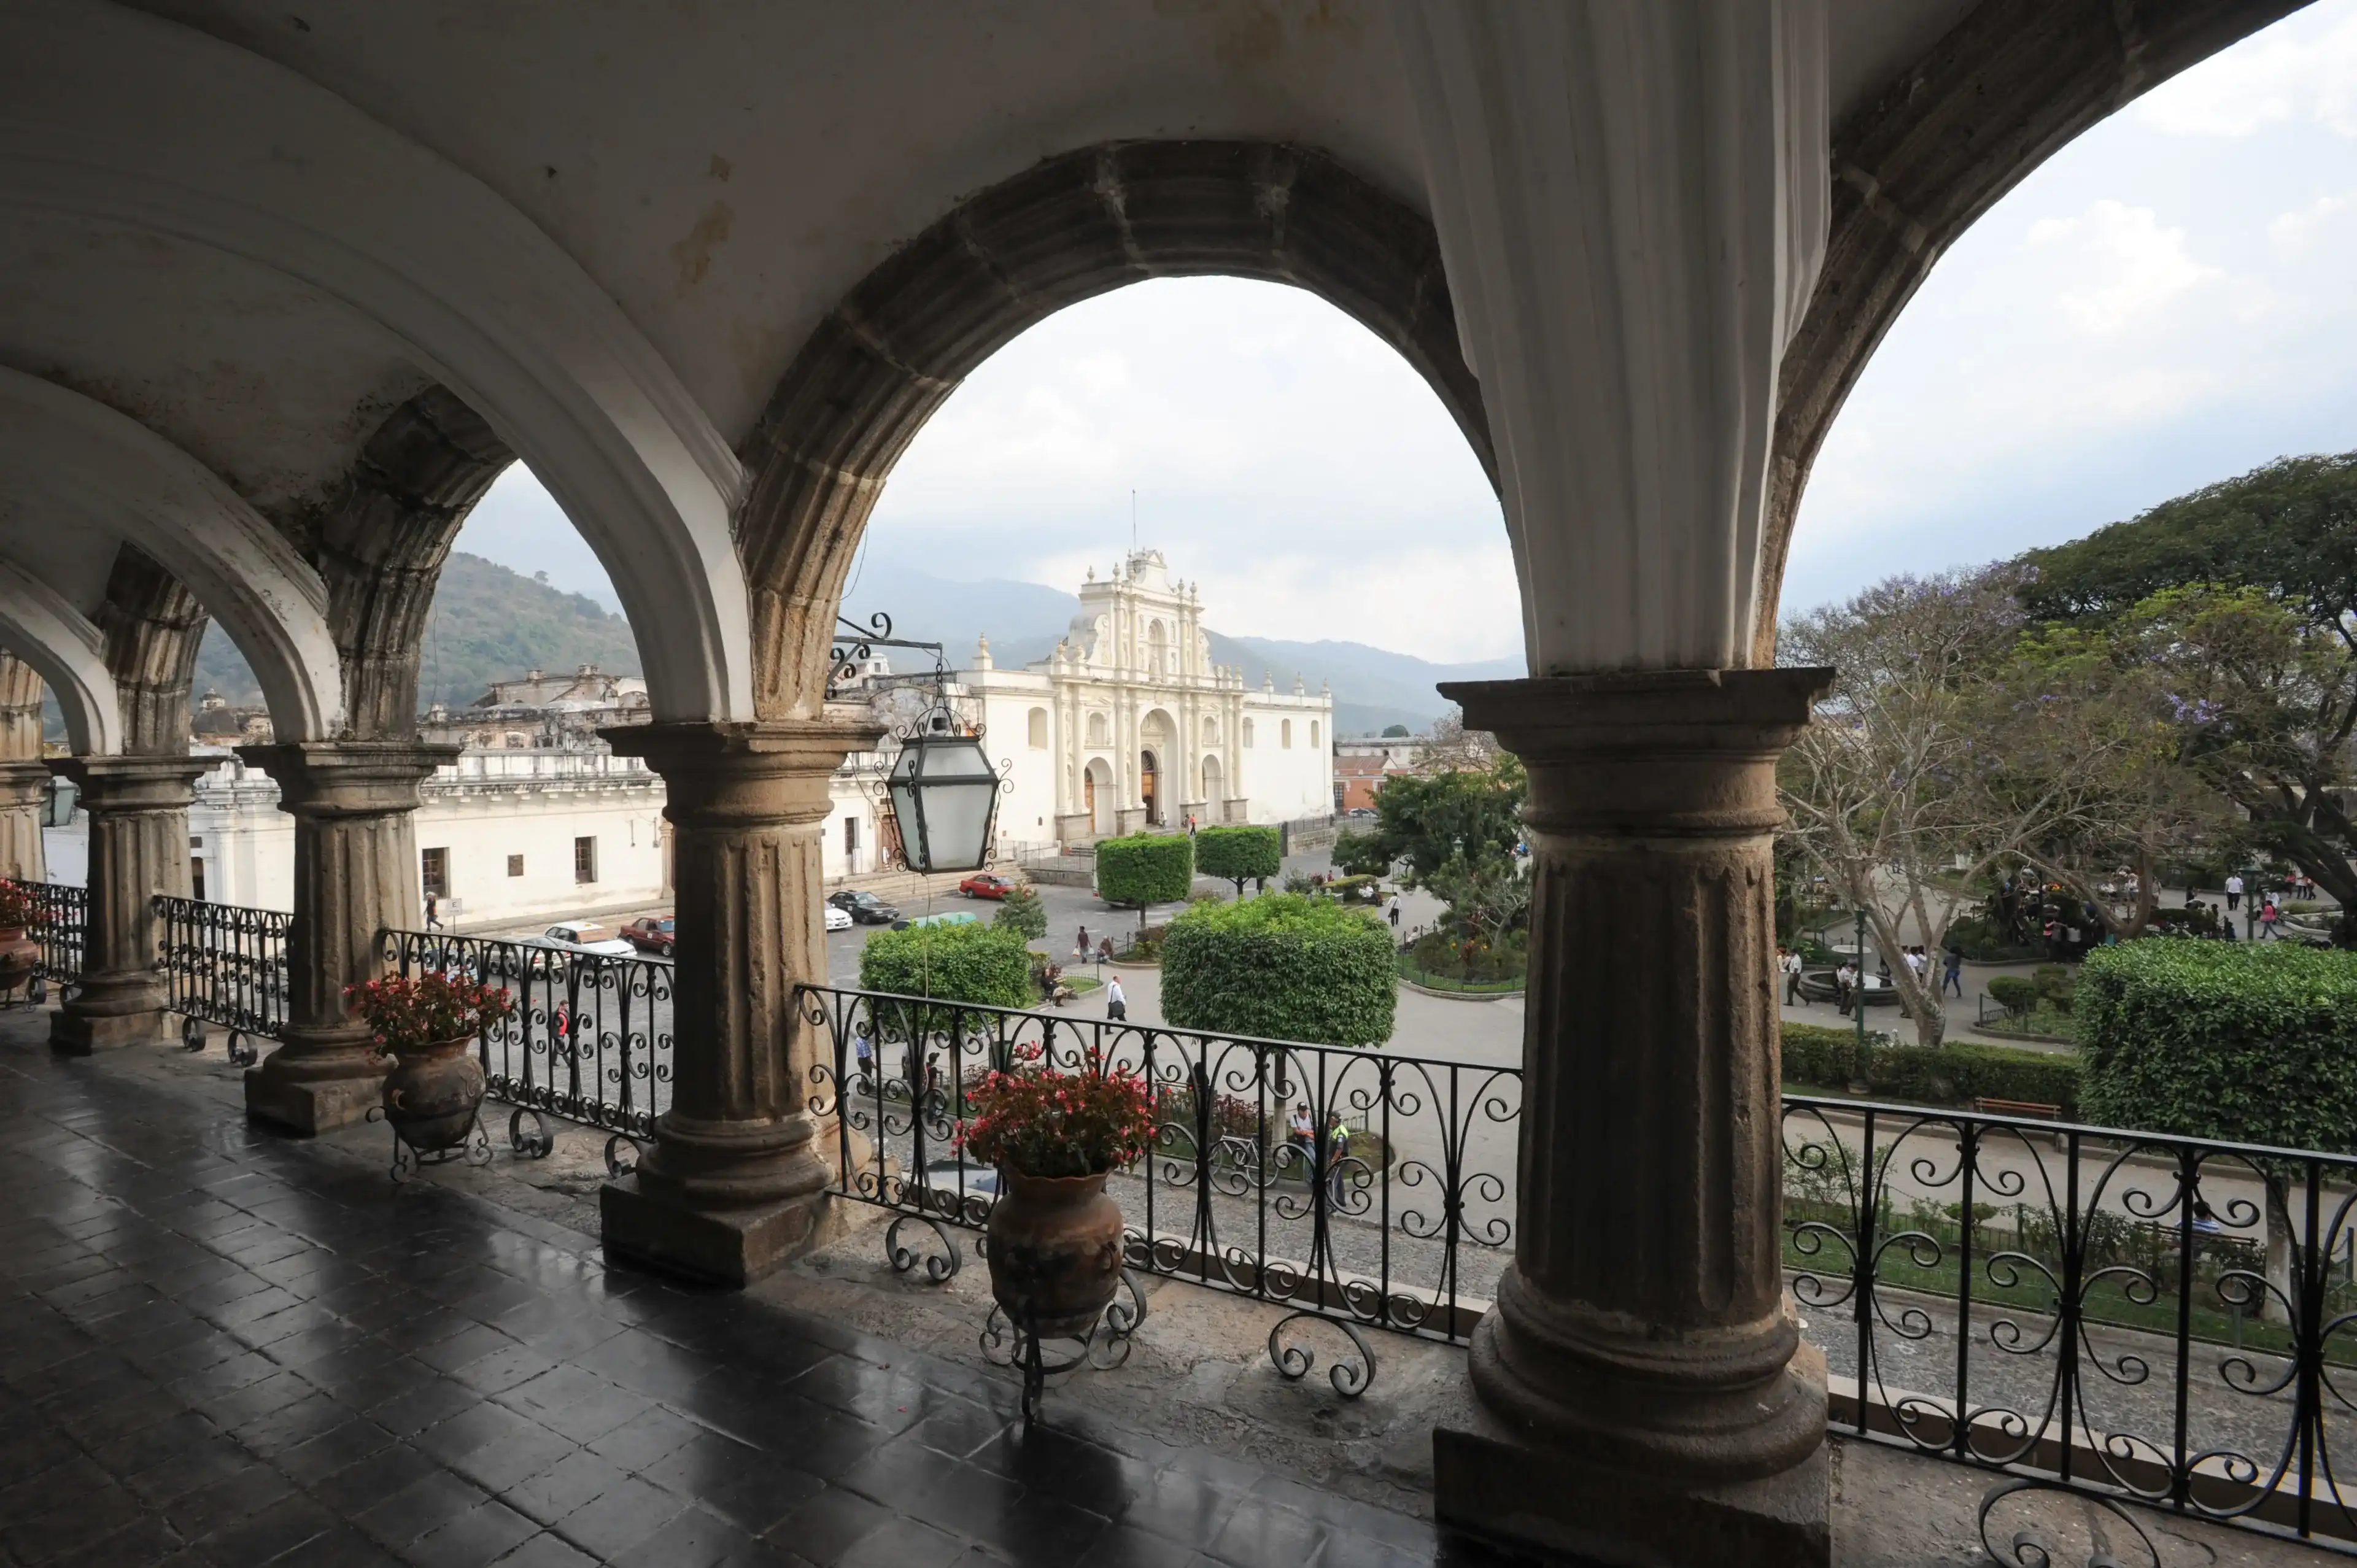 Best Antigua Guatemala hotels. Cheap hotels in Antigua Guatemala, Guatemala